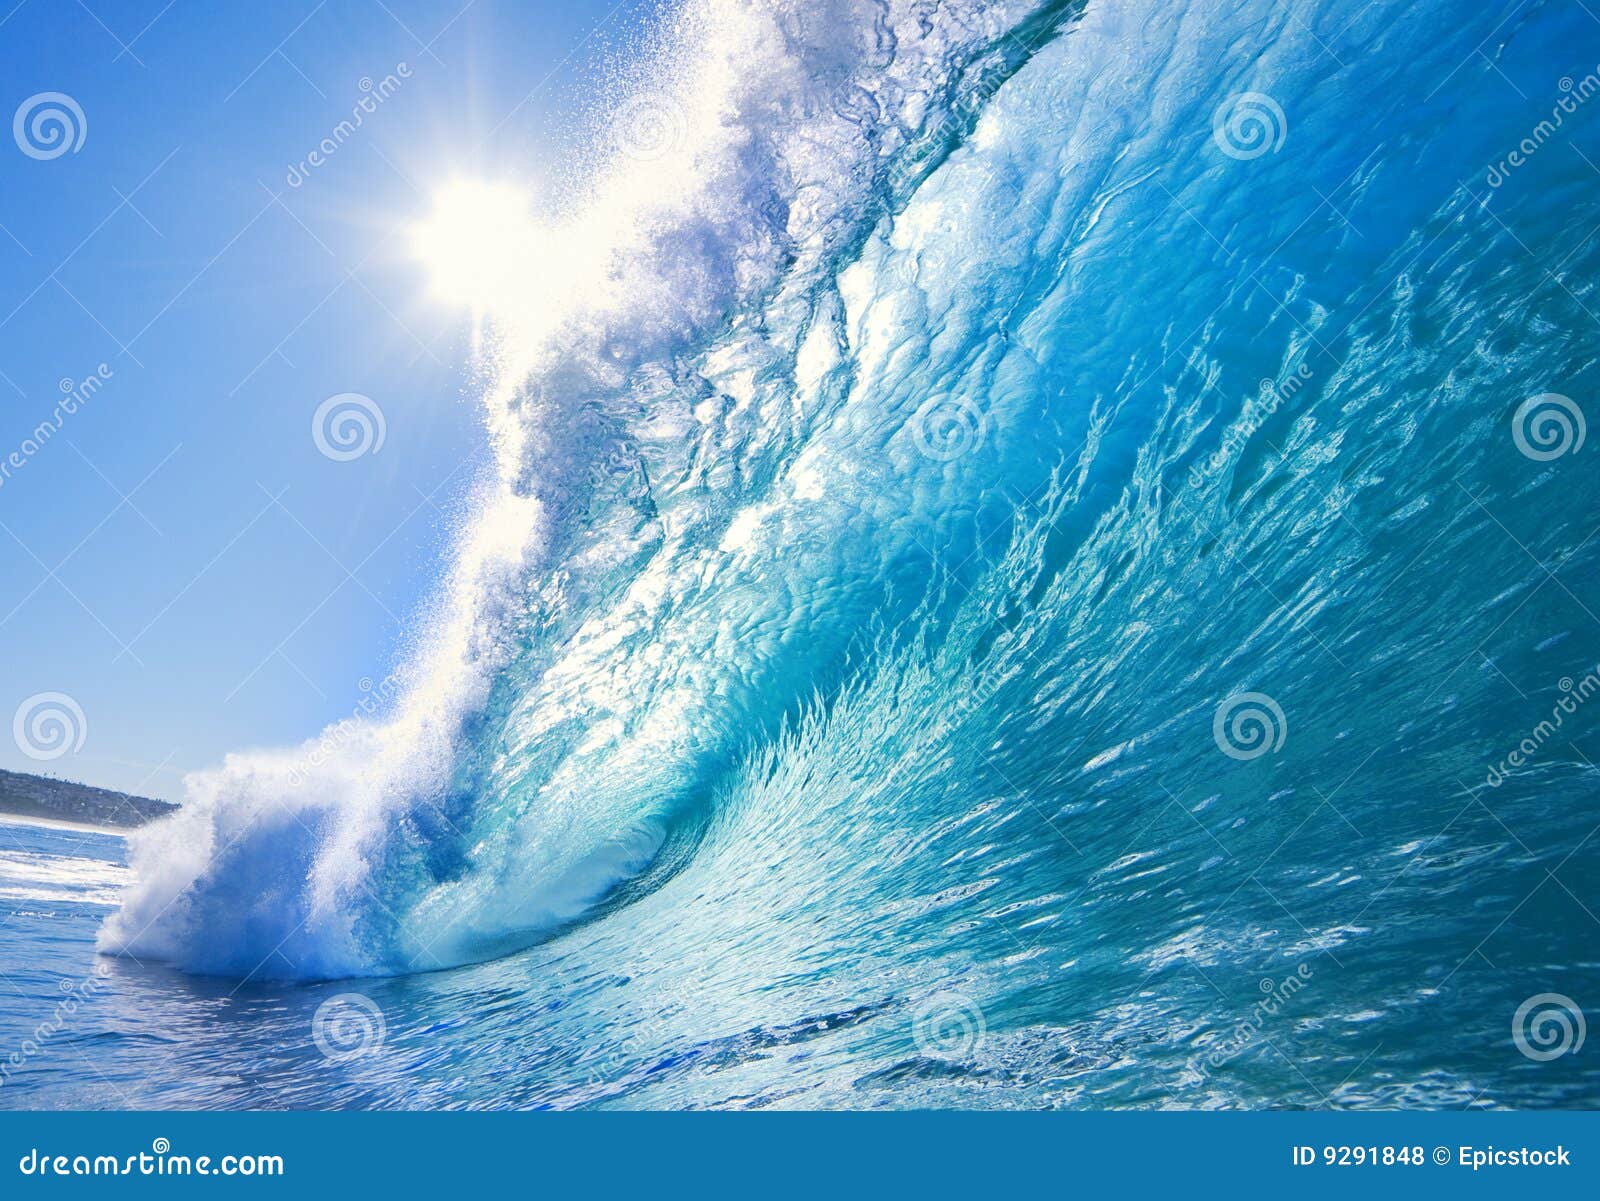 powerful crashing surfing wave